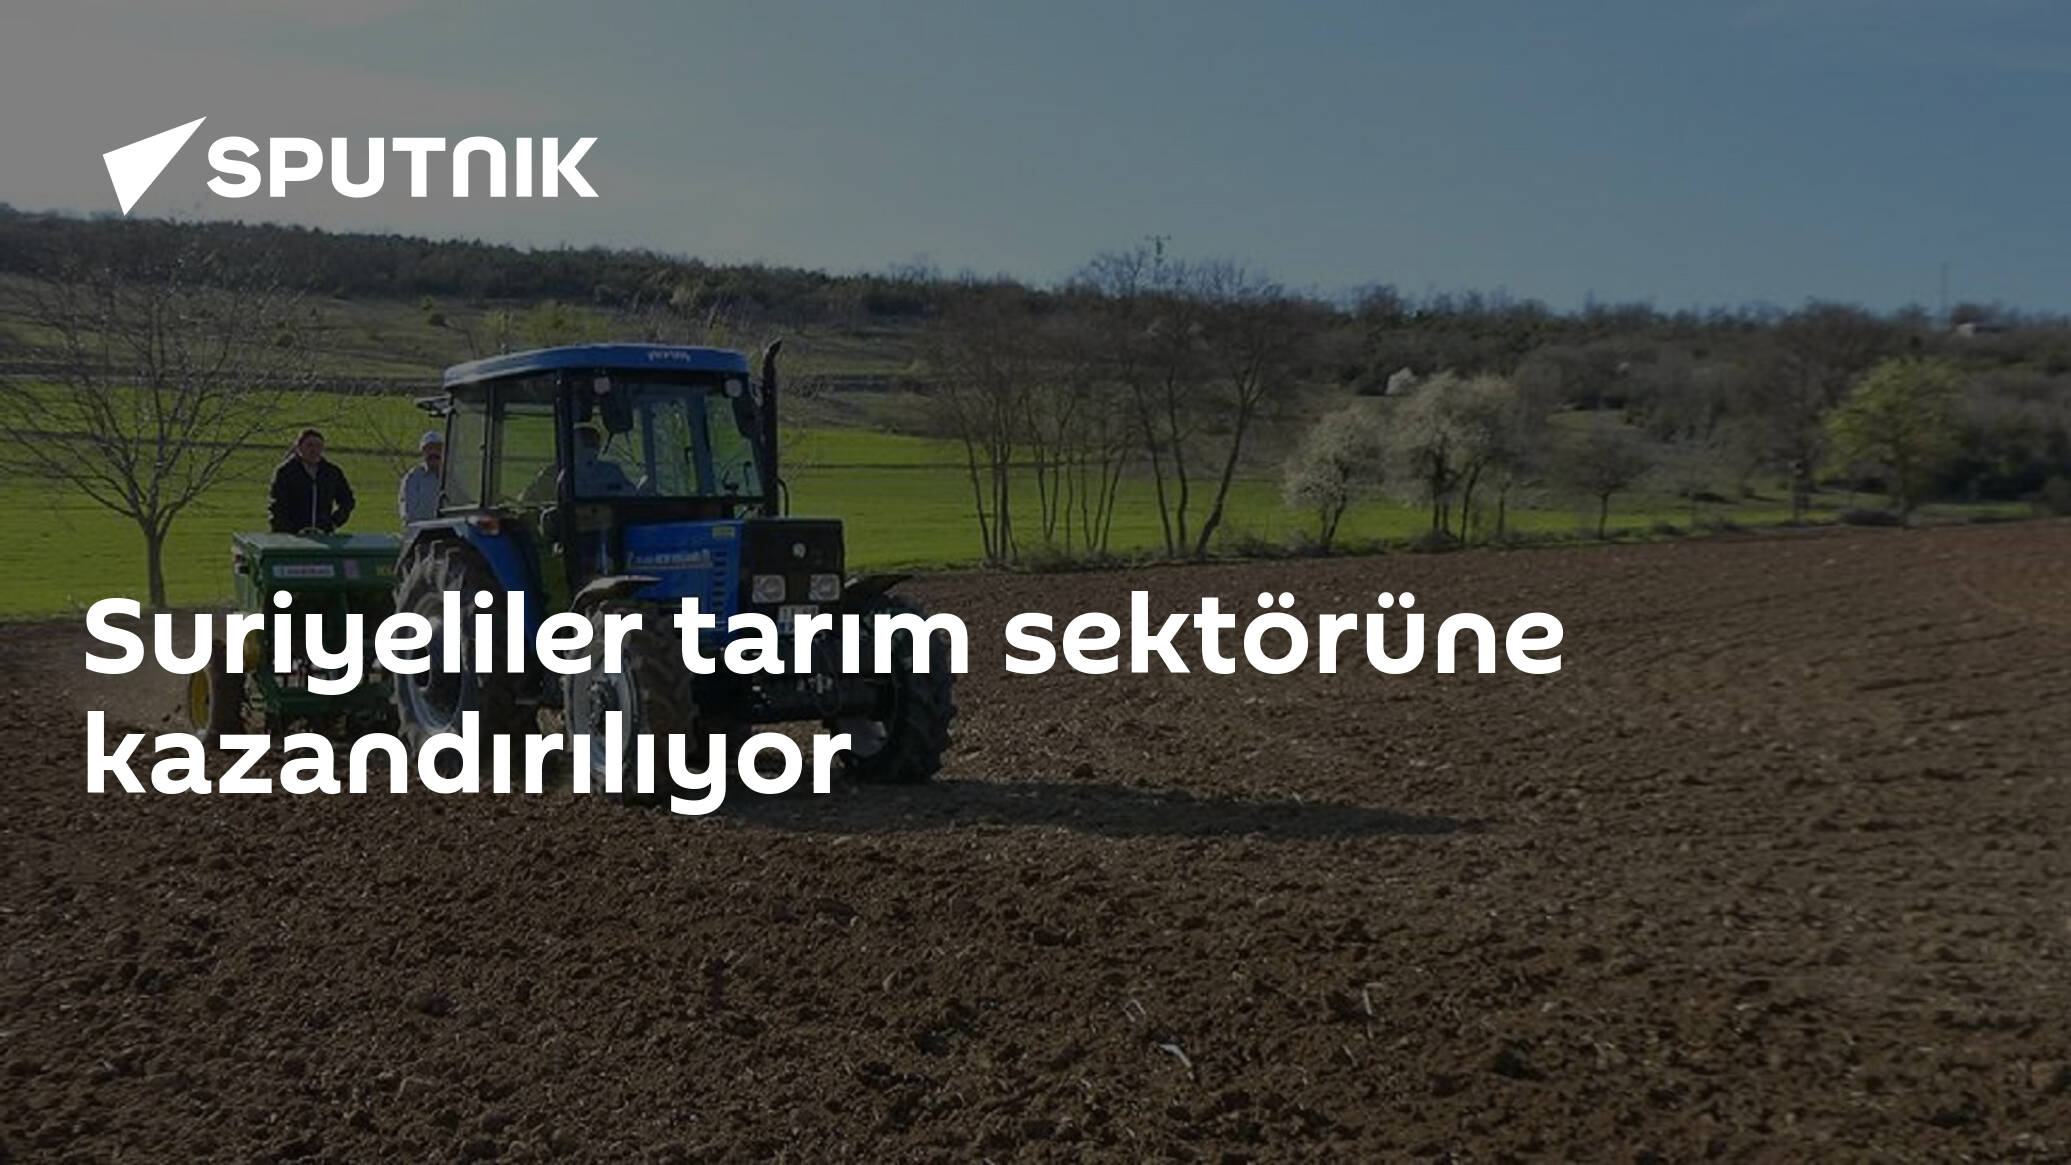 Suriyeliler tarım sektörüne kazandırılıyor - 12.03.2019, Sputnik Türkiye